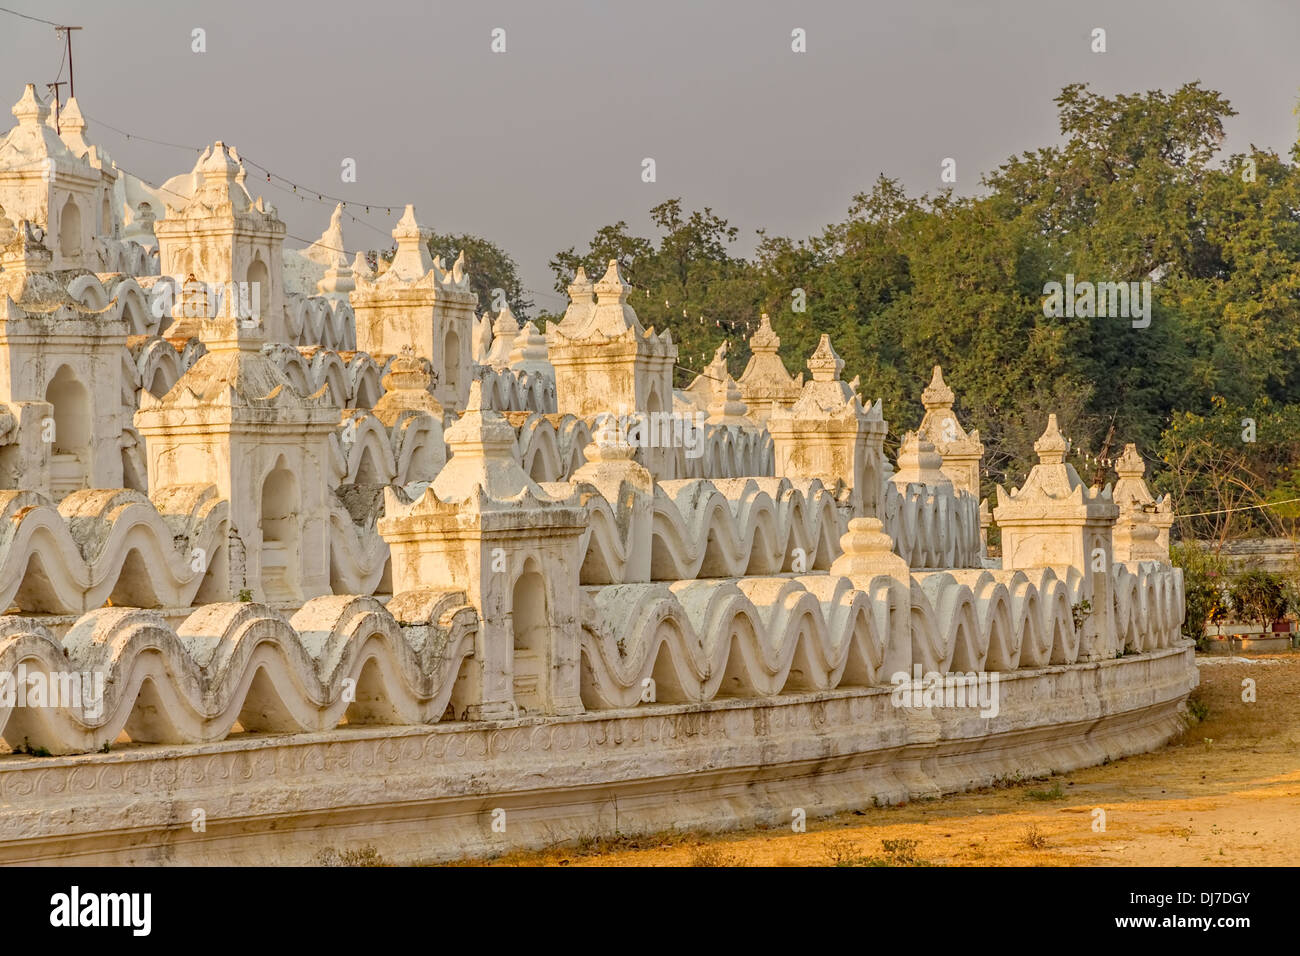 Près de Mandalay Mingun est une attraction touristique - Mya Thein Tan détail Pagode Banque D'Images